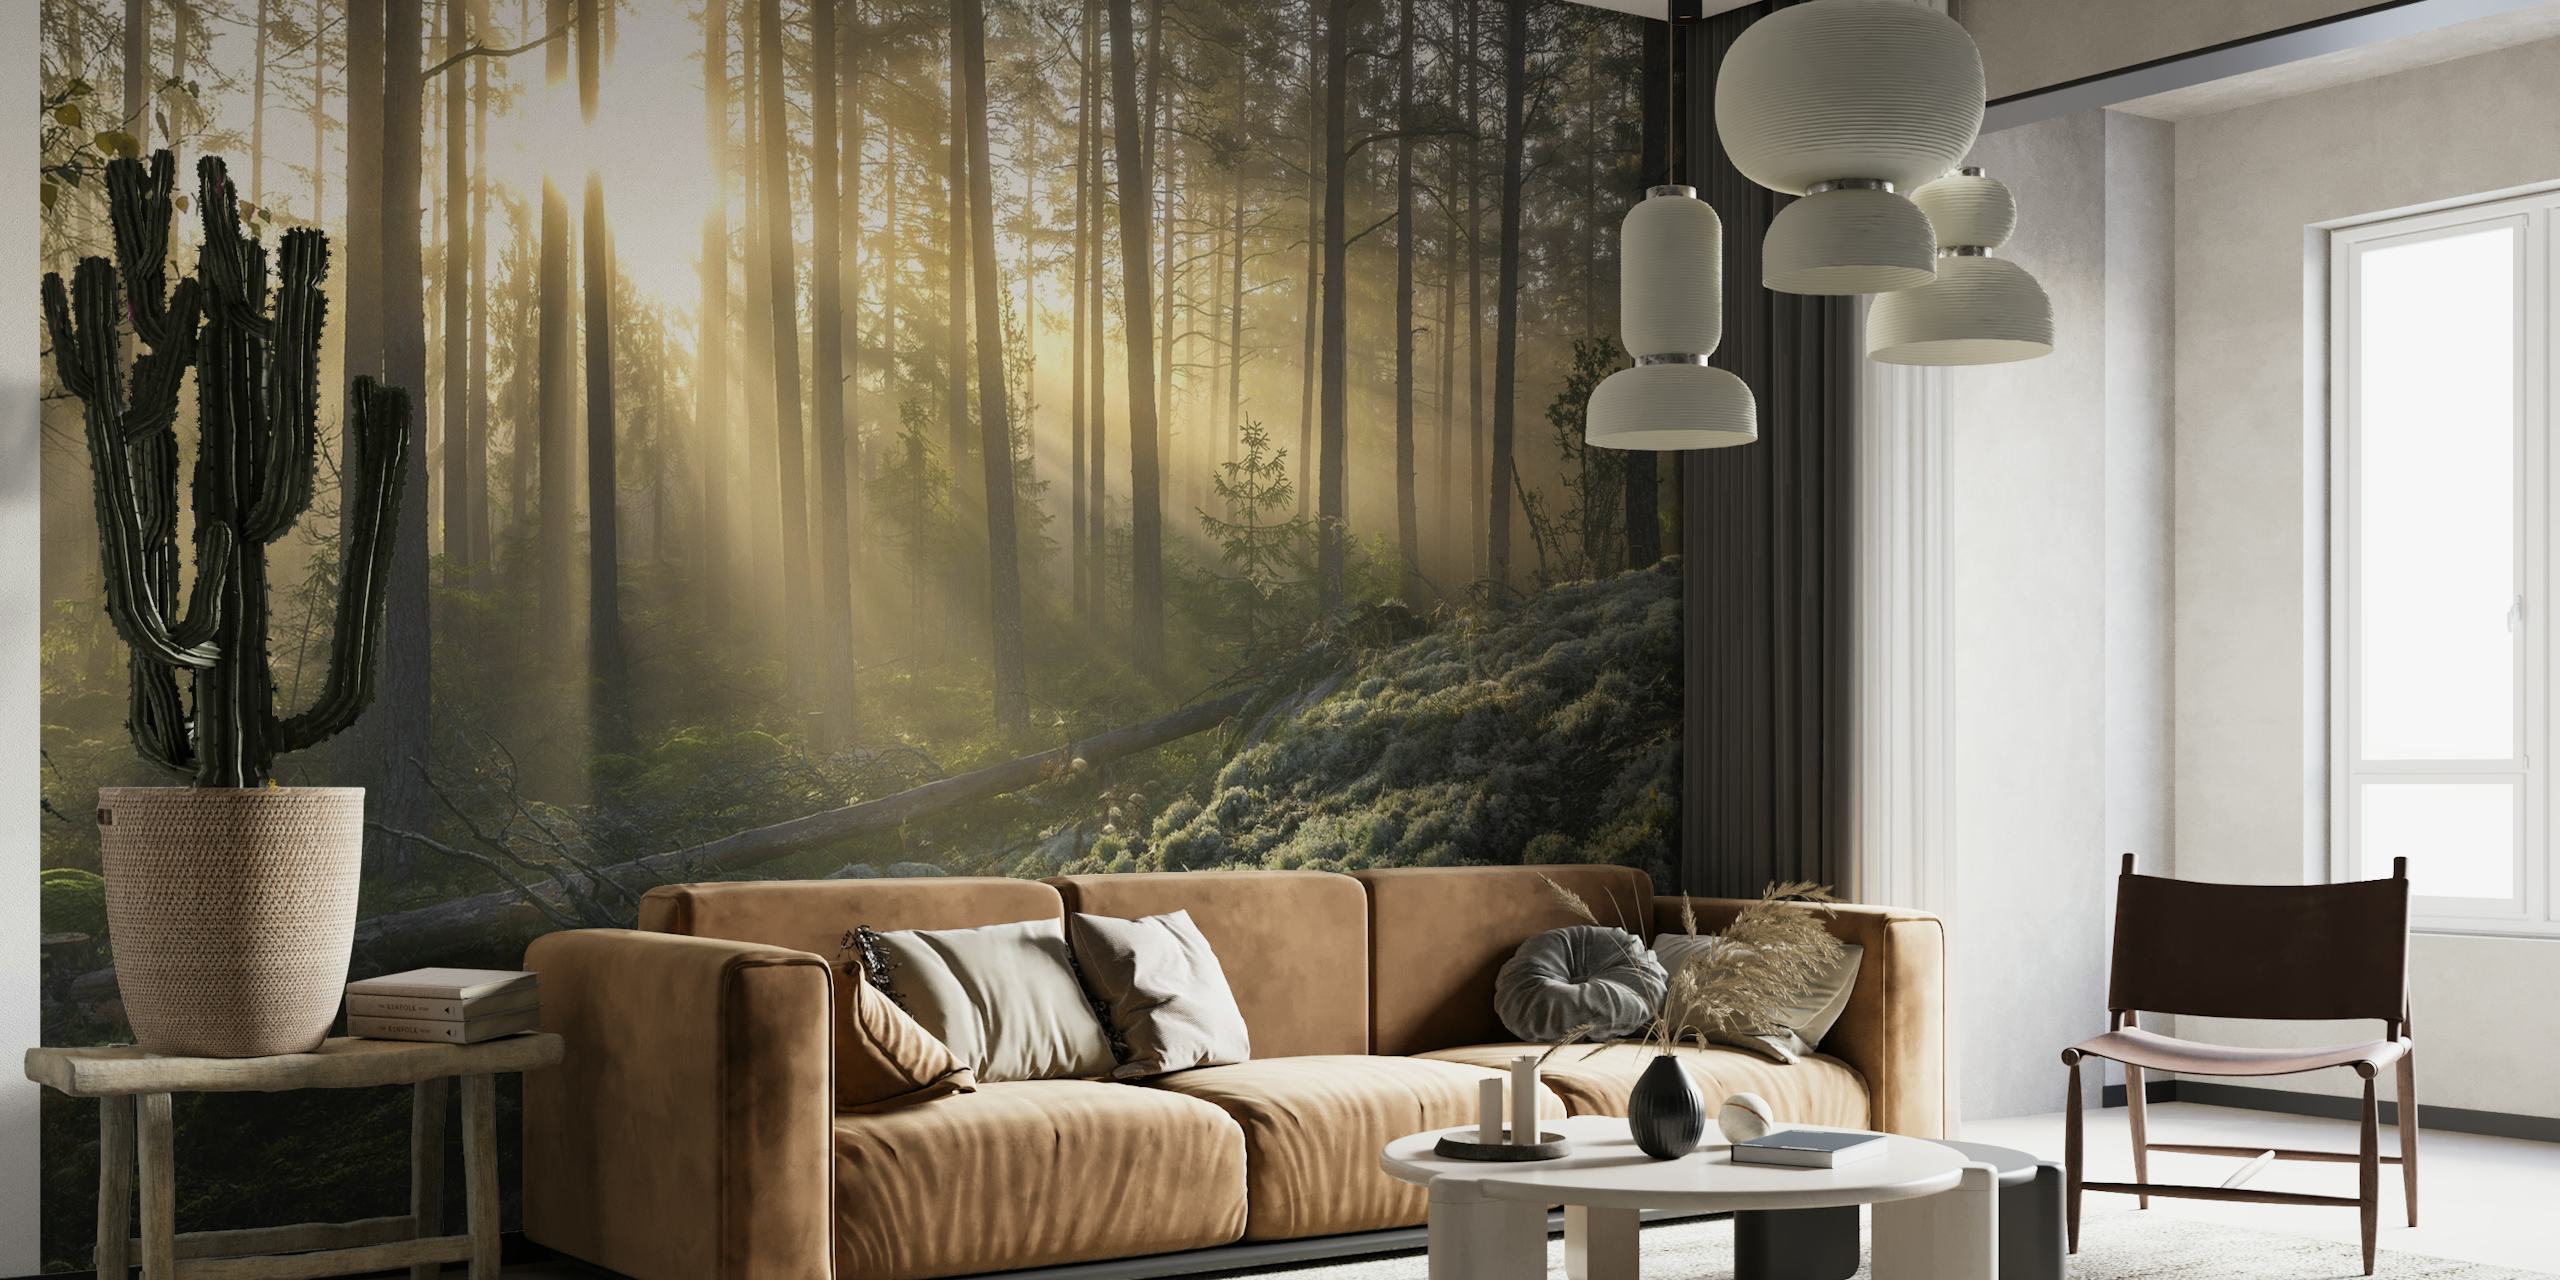 Mistig bos met zonlicht dat door de bomen dringt en een muurschildering met wit mos op de voorgrond